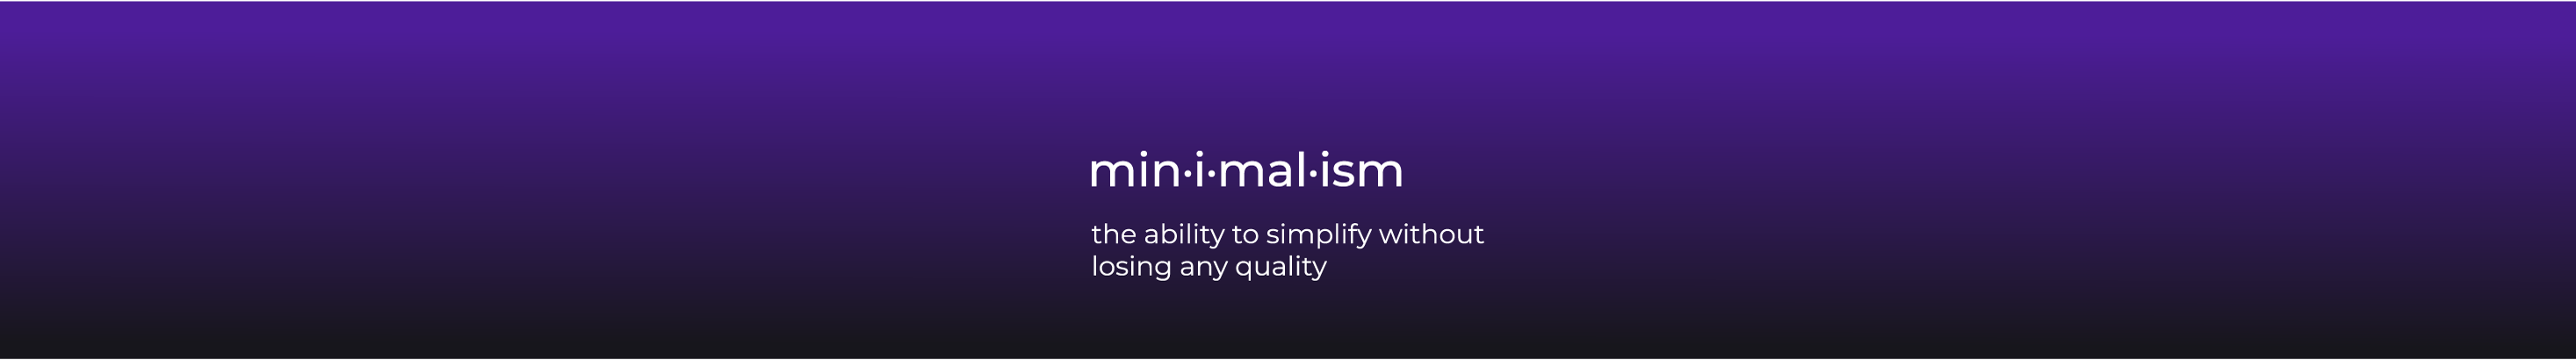 Minimali Graphic's profile banner